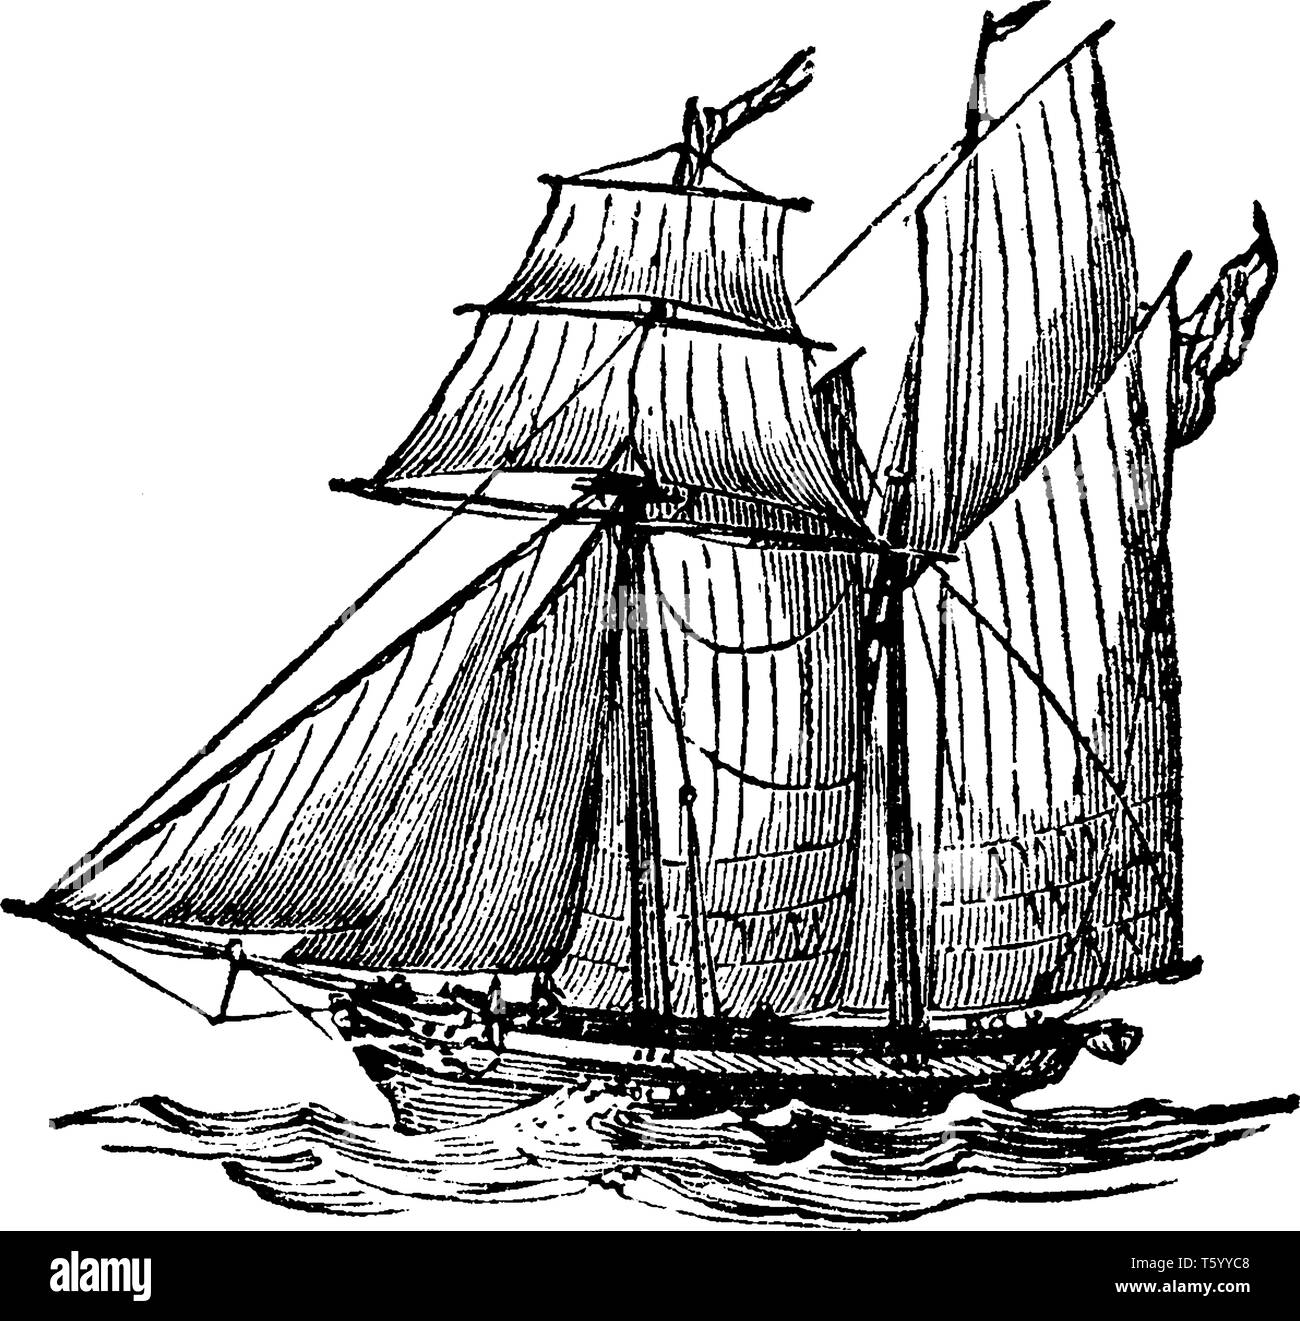 Bateau goélette est un petit navire de construction rapide sharp de voile avec deux poids et la direction de la voile d'avant en arrière, de type vintage ou dessin de ligne engr Illustration de Vecteur